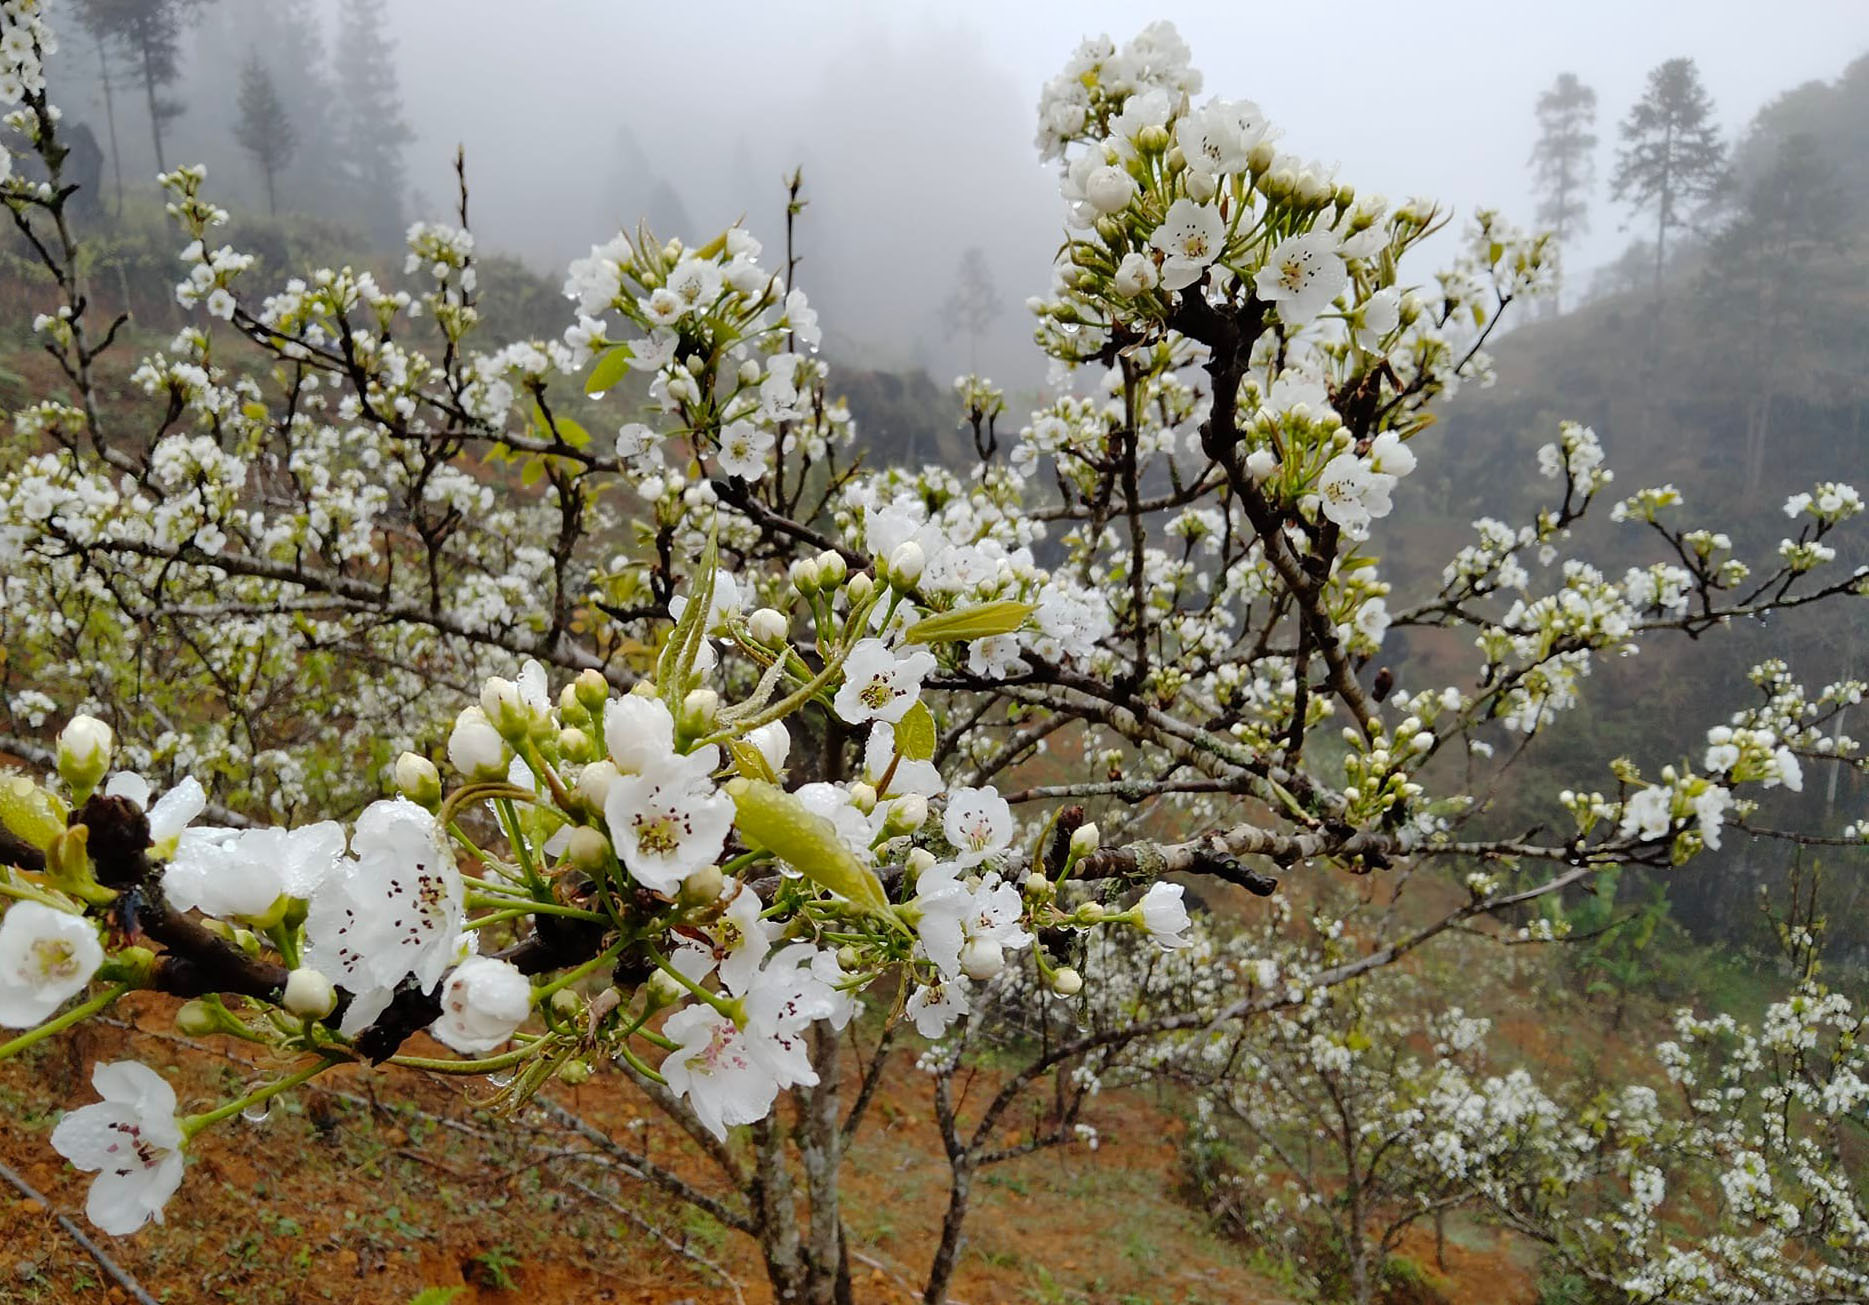 Lần đầu tiên Si Ma Cai tổ chức lễ hội hoa lê, chiêm ngưỡng vẻ đẹp thiếu nữ Mông bên rừng hoa trắng - Ảnh 2.